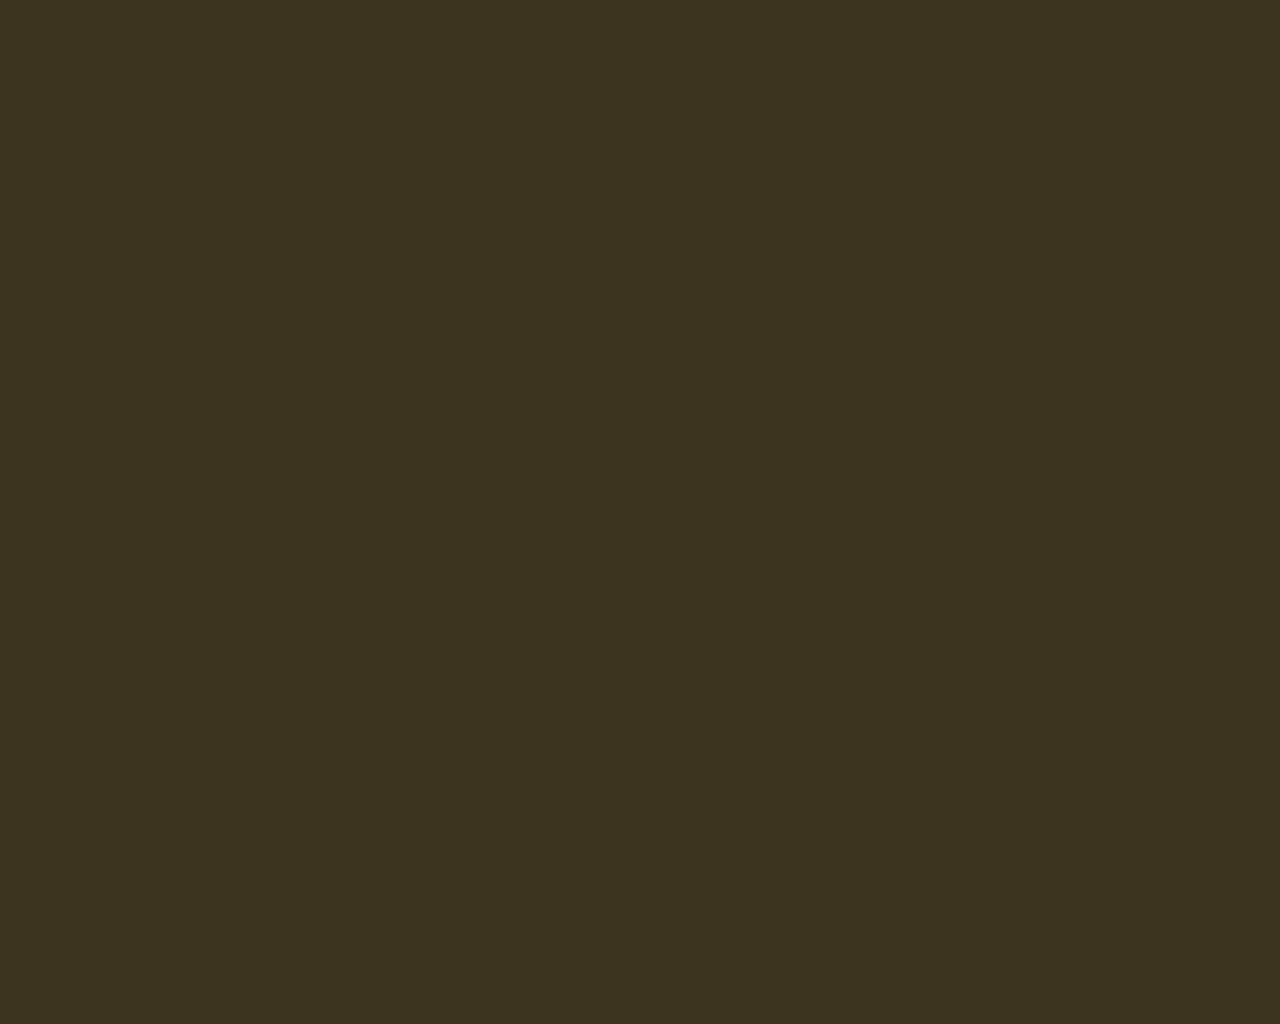 1280x1024 Olive Drab Number Seven Solid Color Background